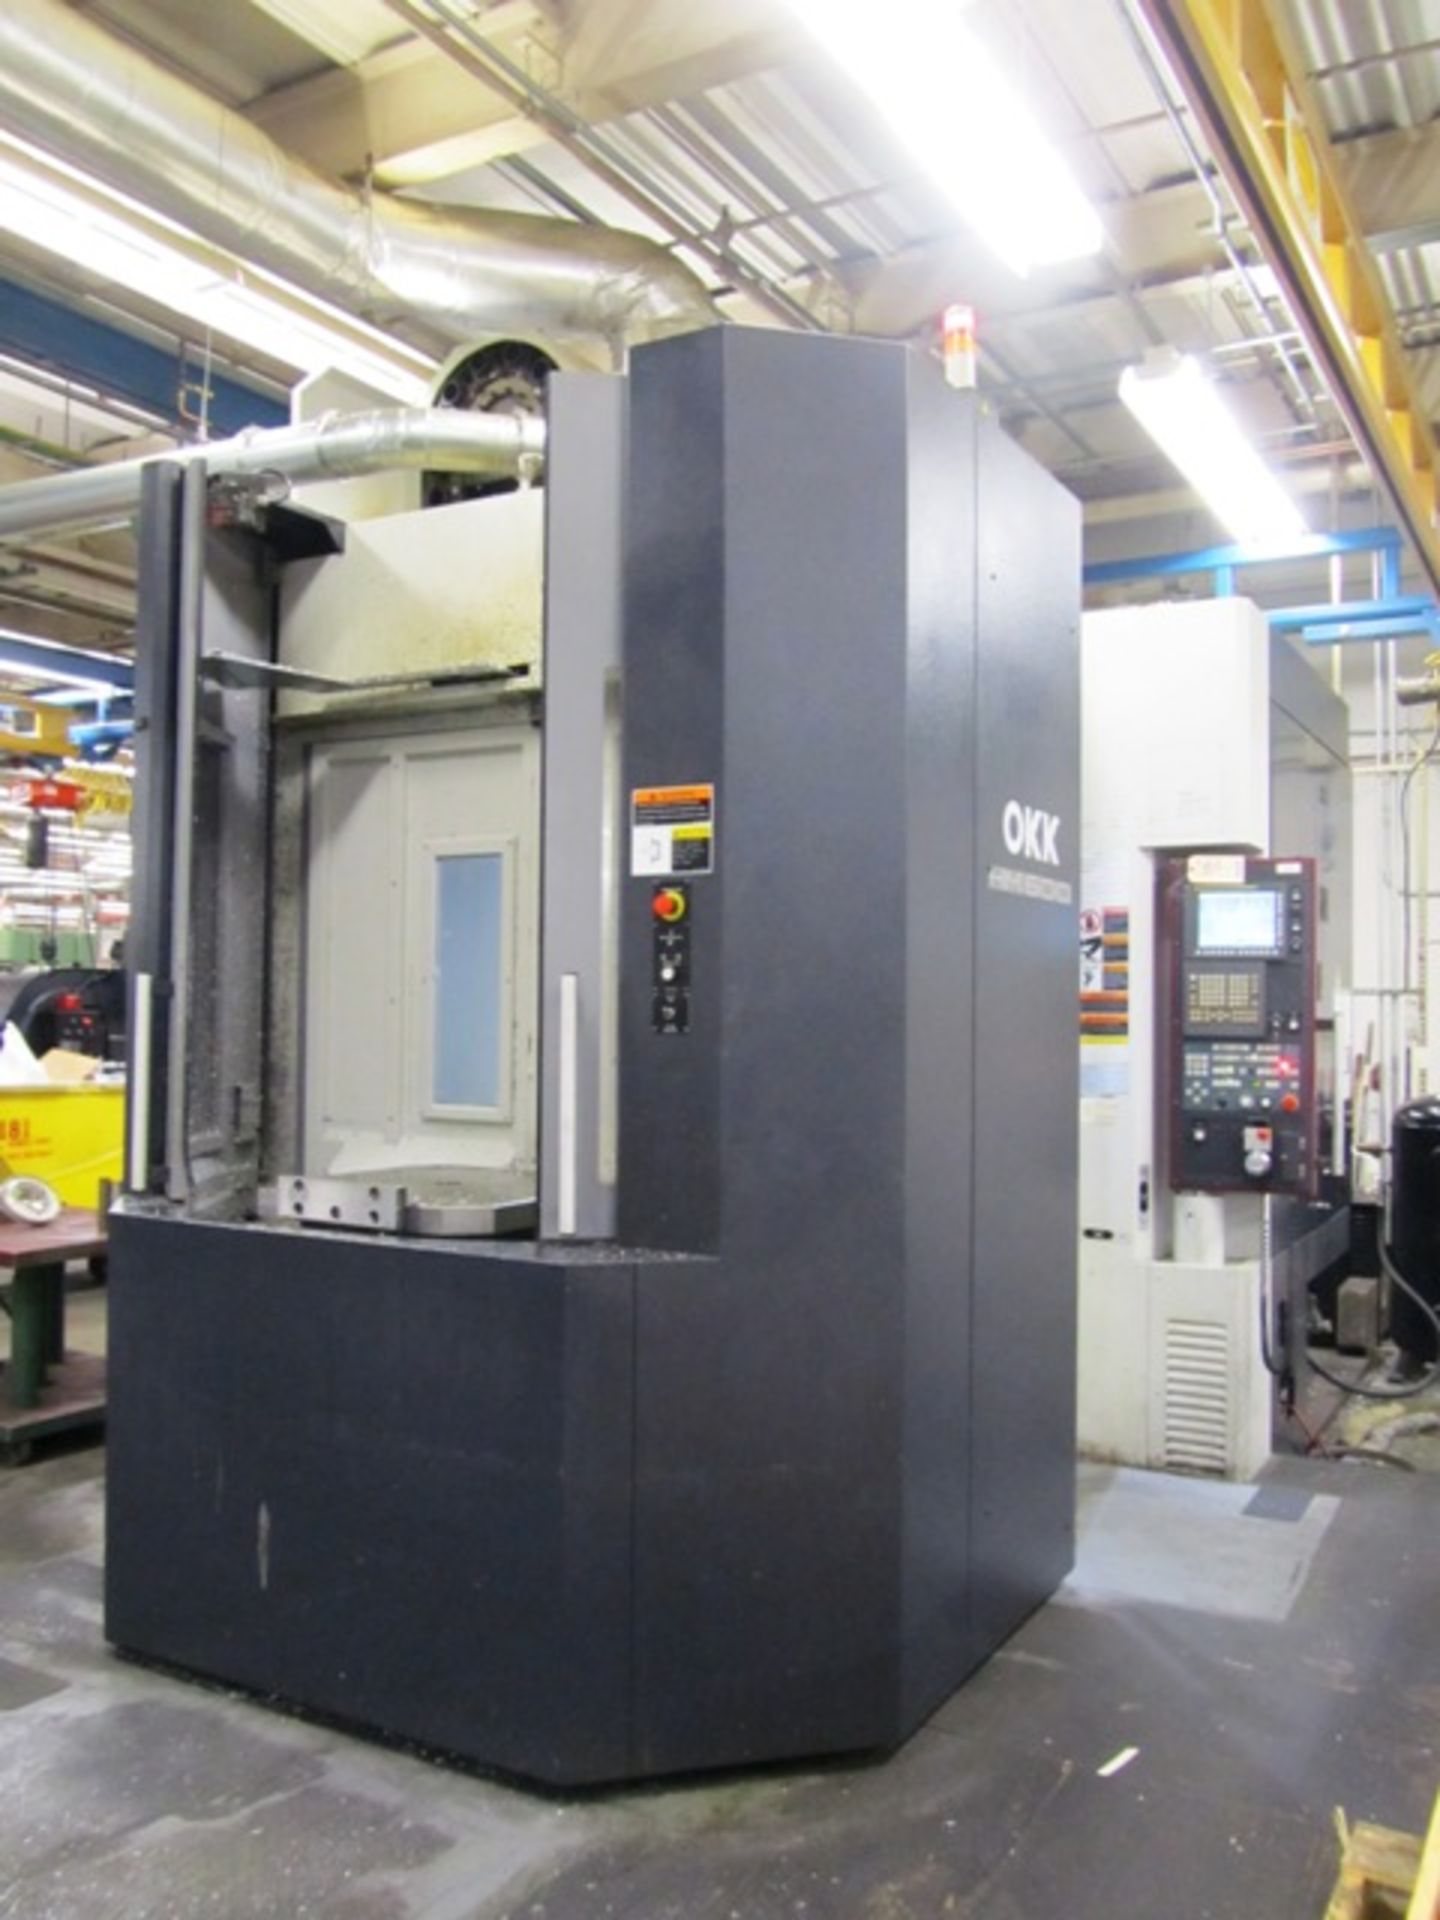 OKK HM600 CNC Horizontal Machining Center - Image 4 of 7